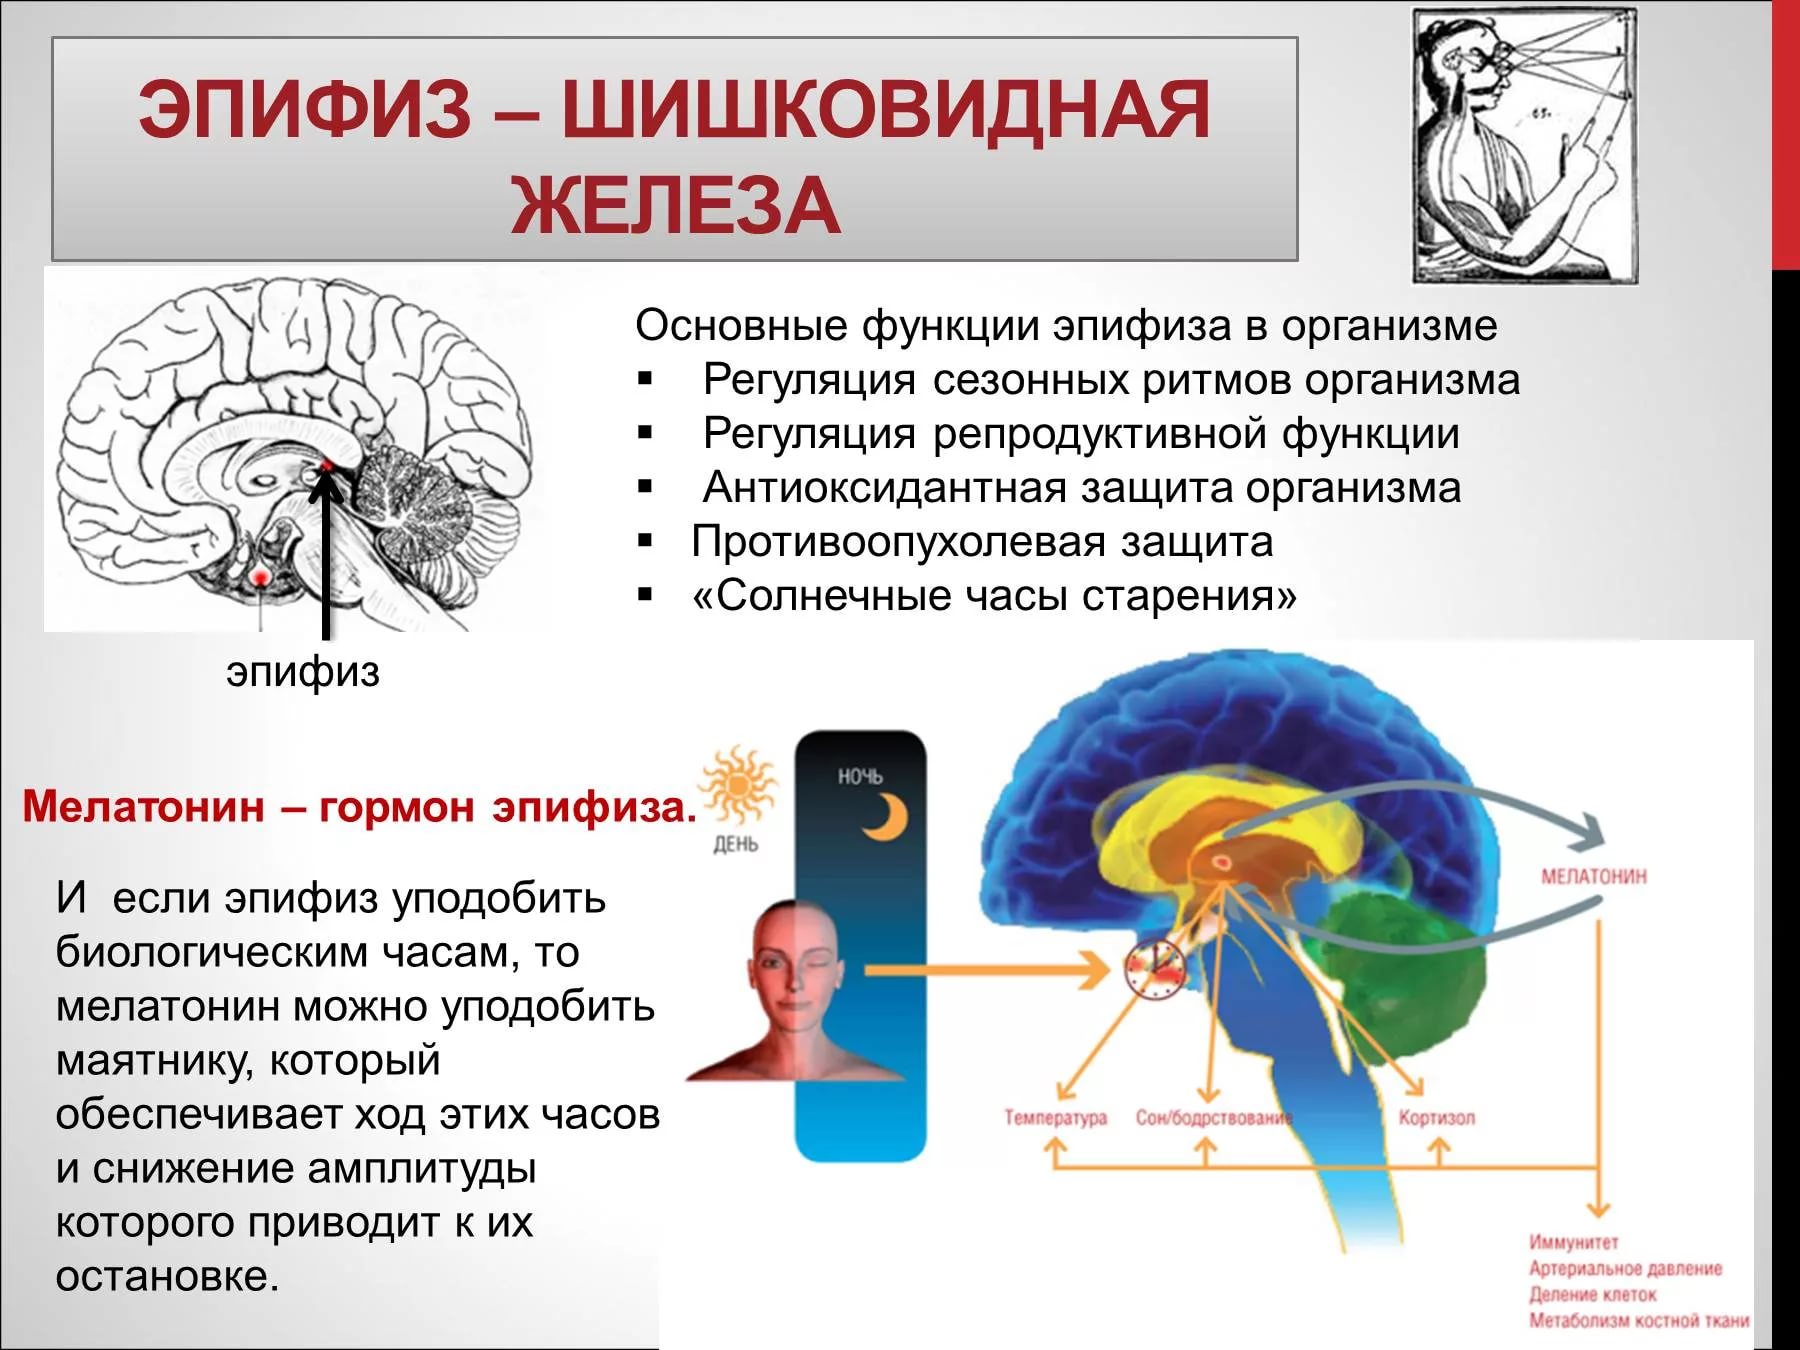 Болезни связанные с мозгом. Эпифиз или шишковидная железа. Функция эпифиза в головном мозге. Шишковидное тело в головном мозге. Эпифиз гормоны и функции.